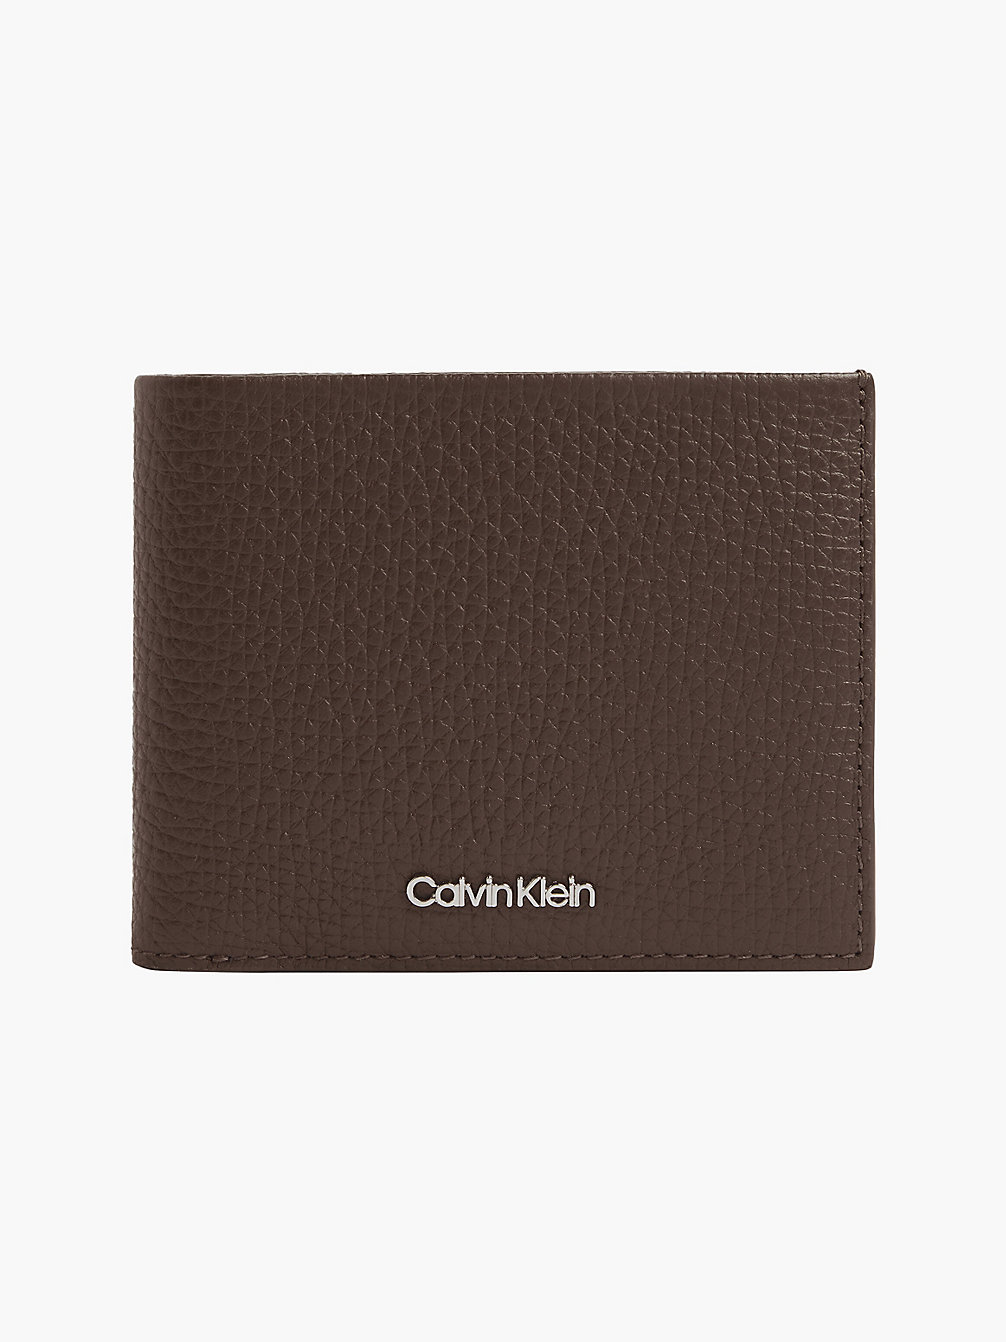 CHESTER BROWN Leather Billfold Wallet undefined men Calvin Klein